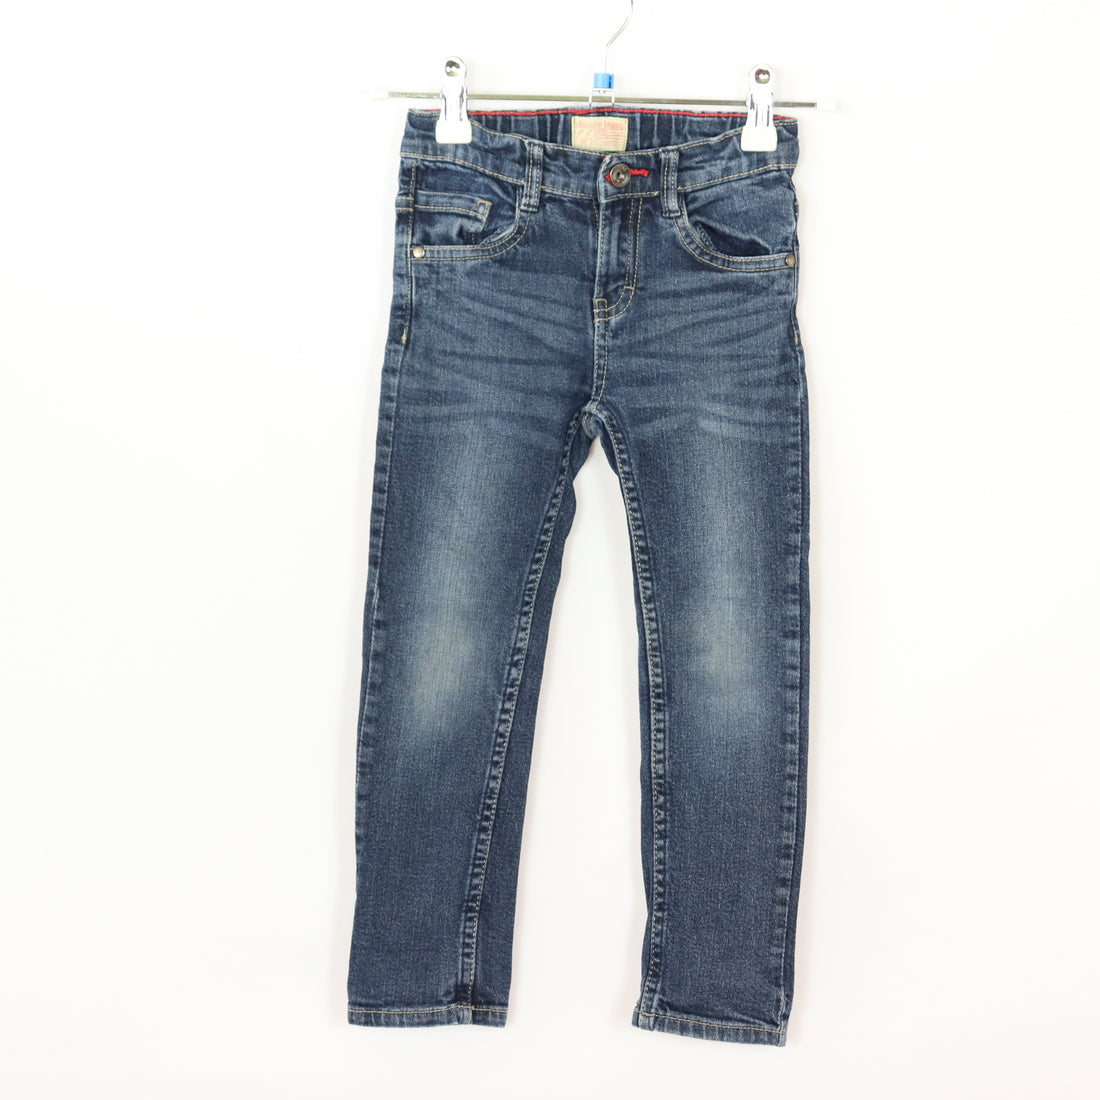 Jeans - Vintage - 98-104 - Blau -  - Guter Zustand